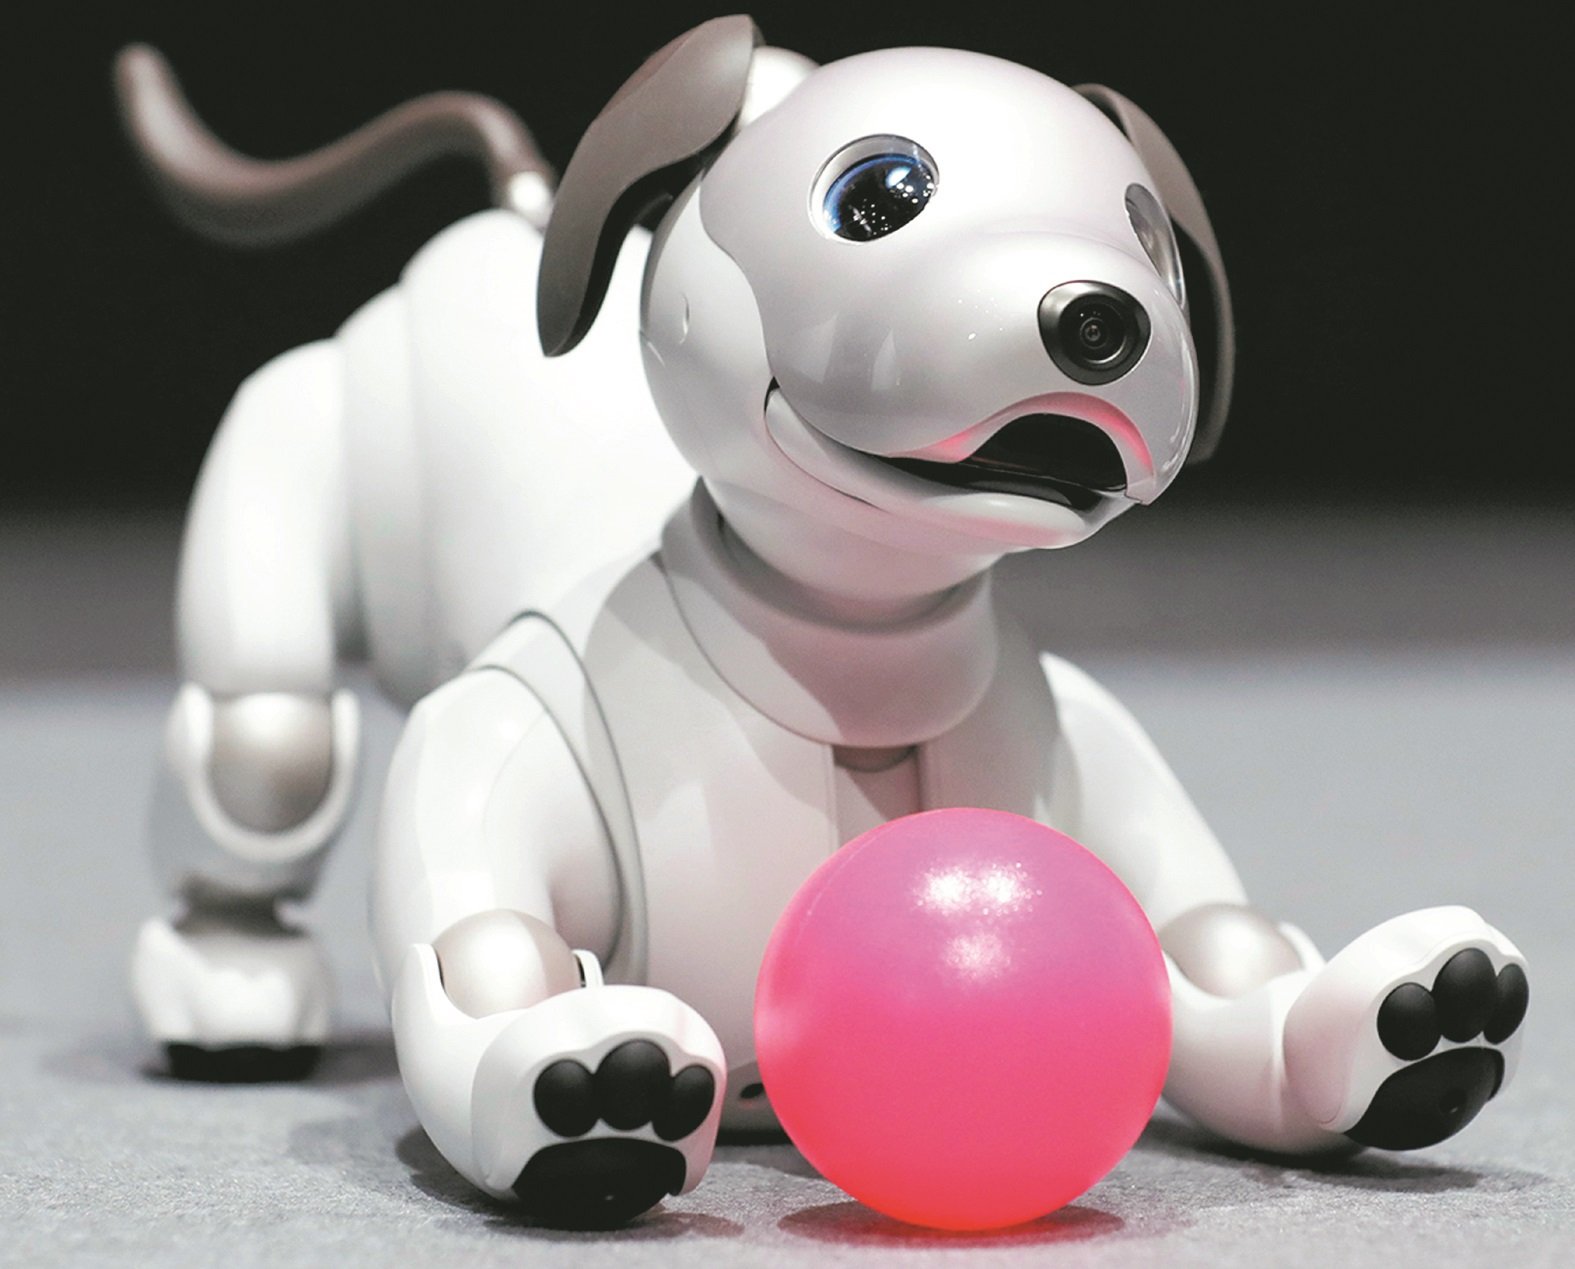 新一代Aibo机器狗能识别、解析图像及声音。图为一只Aibo机器狗正趴在地上玩球。